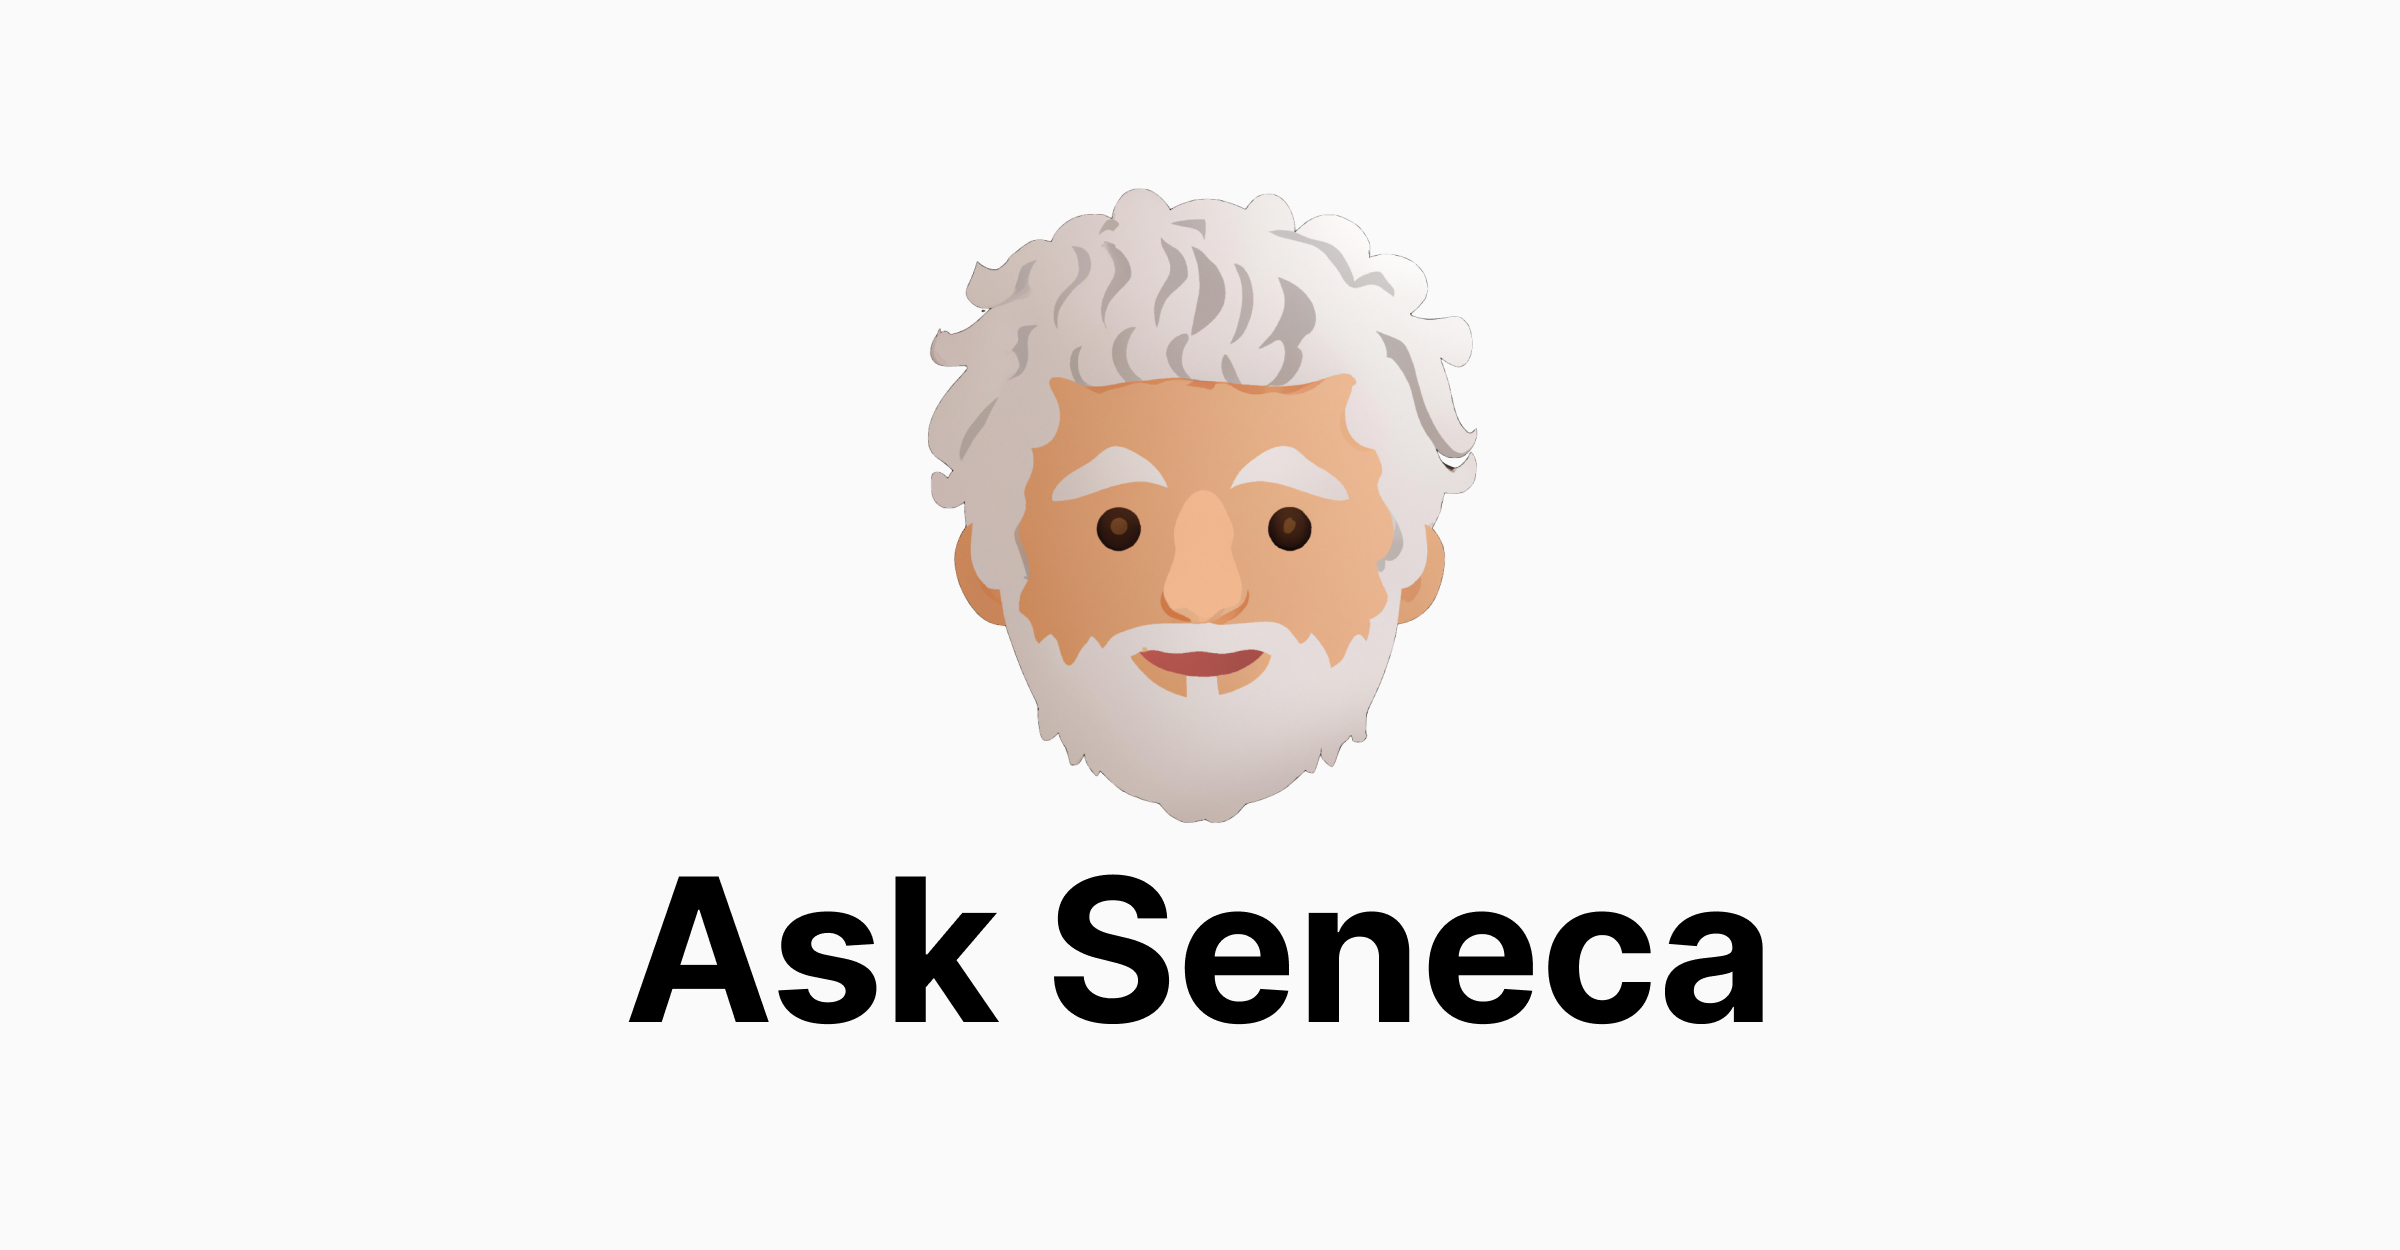 Demandez à Seneca - un outil pour répondre aux questions sur Seneca